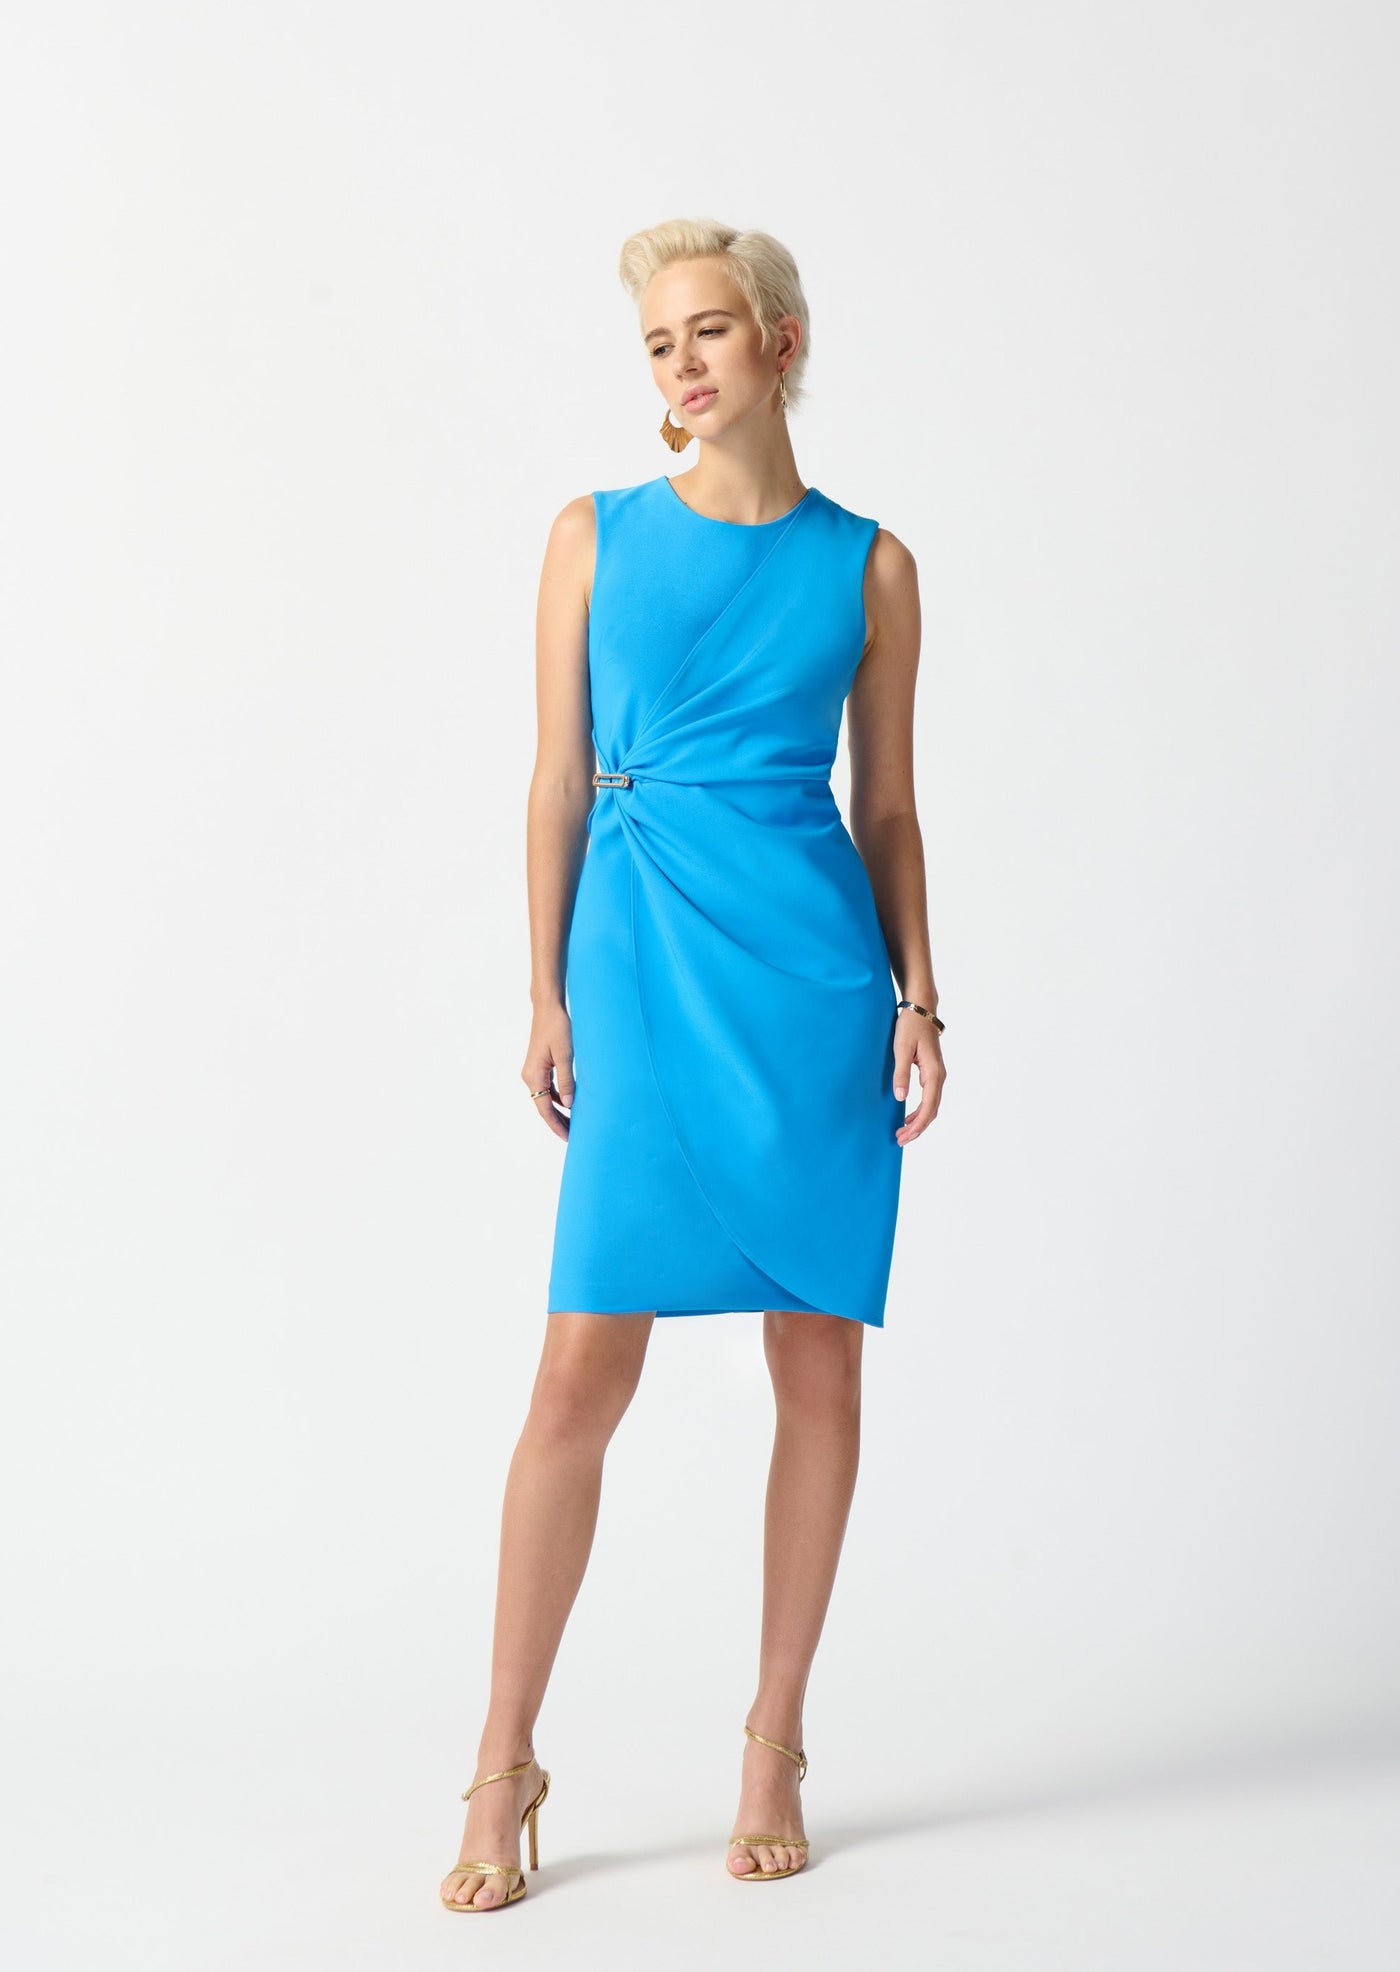 Casablanca Lux Twill Sheath Dress - French Blue Dress 242151